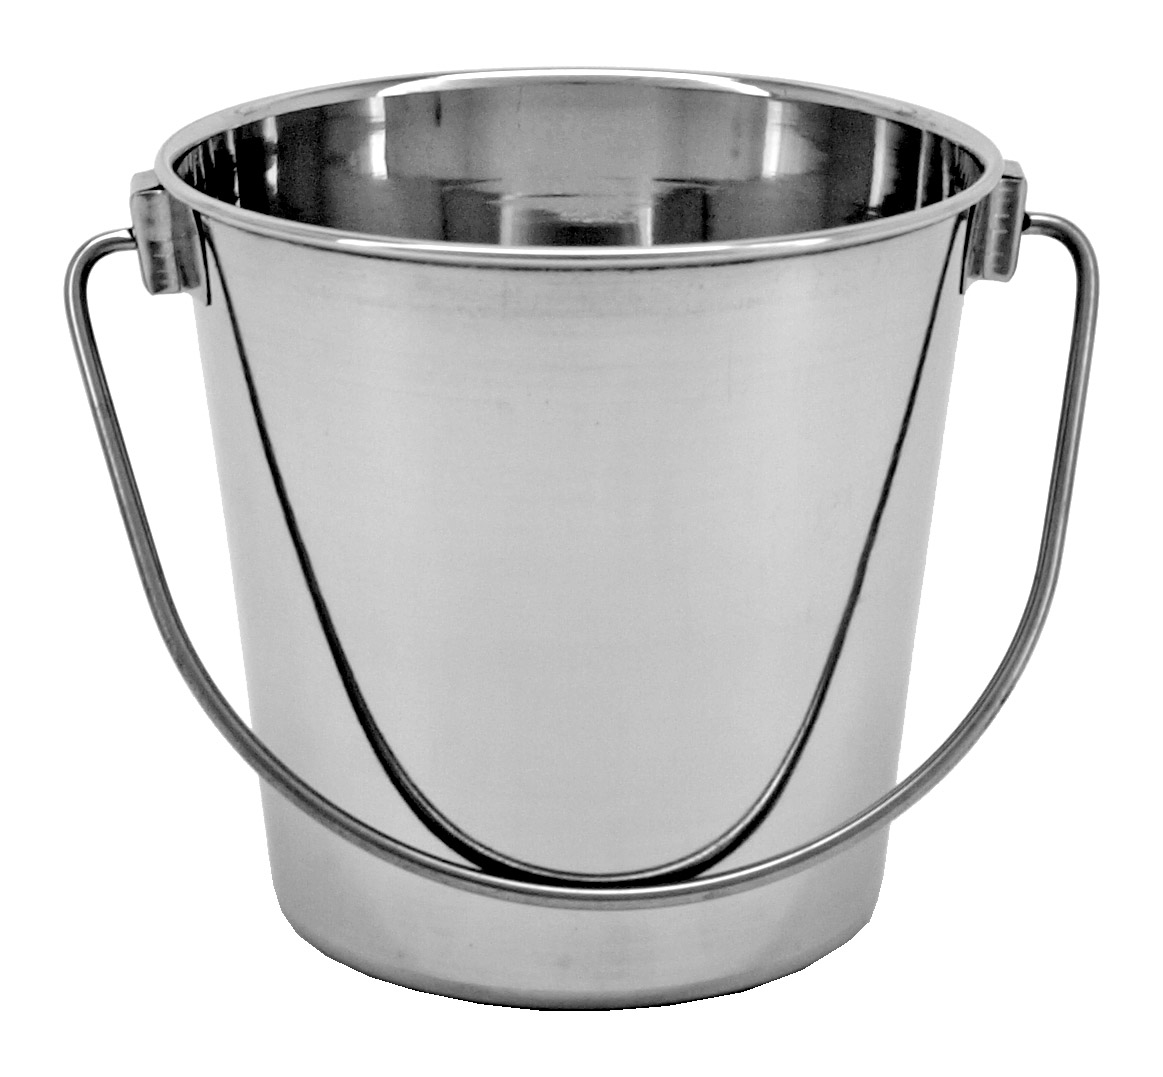 .5 Gallon Stainless Steel Bucket